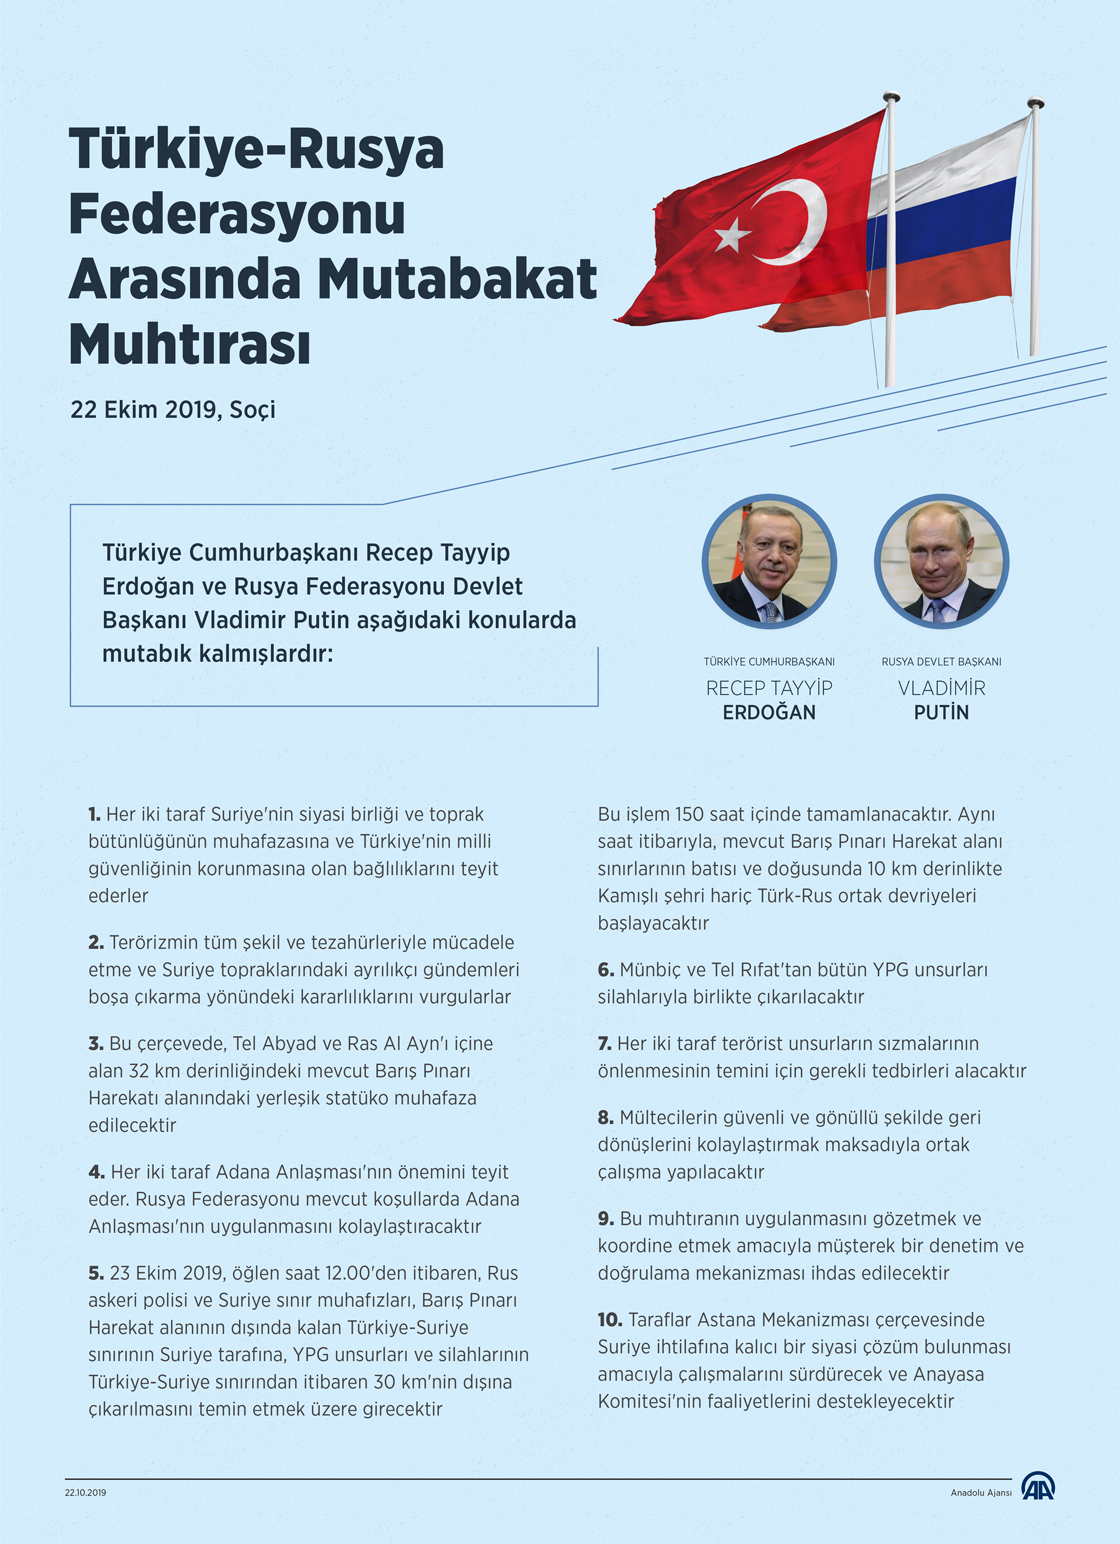  Türkiye-Rusya Federasyonu Arasında Mutabakat Muhtırası